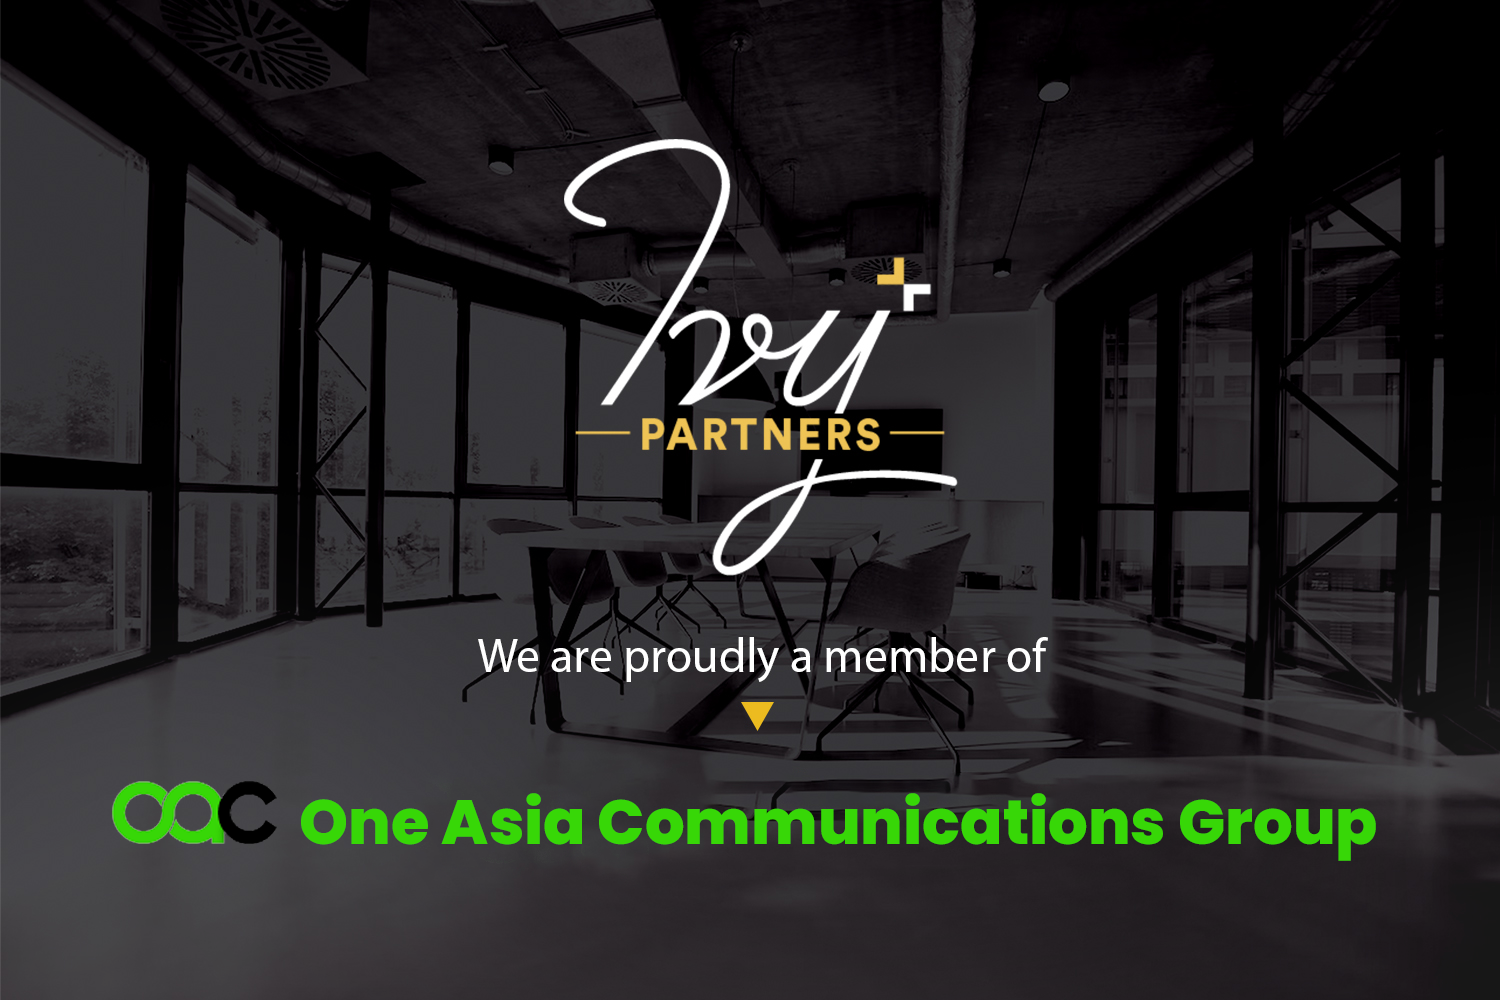 Ivy+Partners là thành viên chính thức của One Asia Communications Group